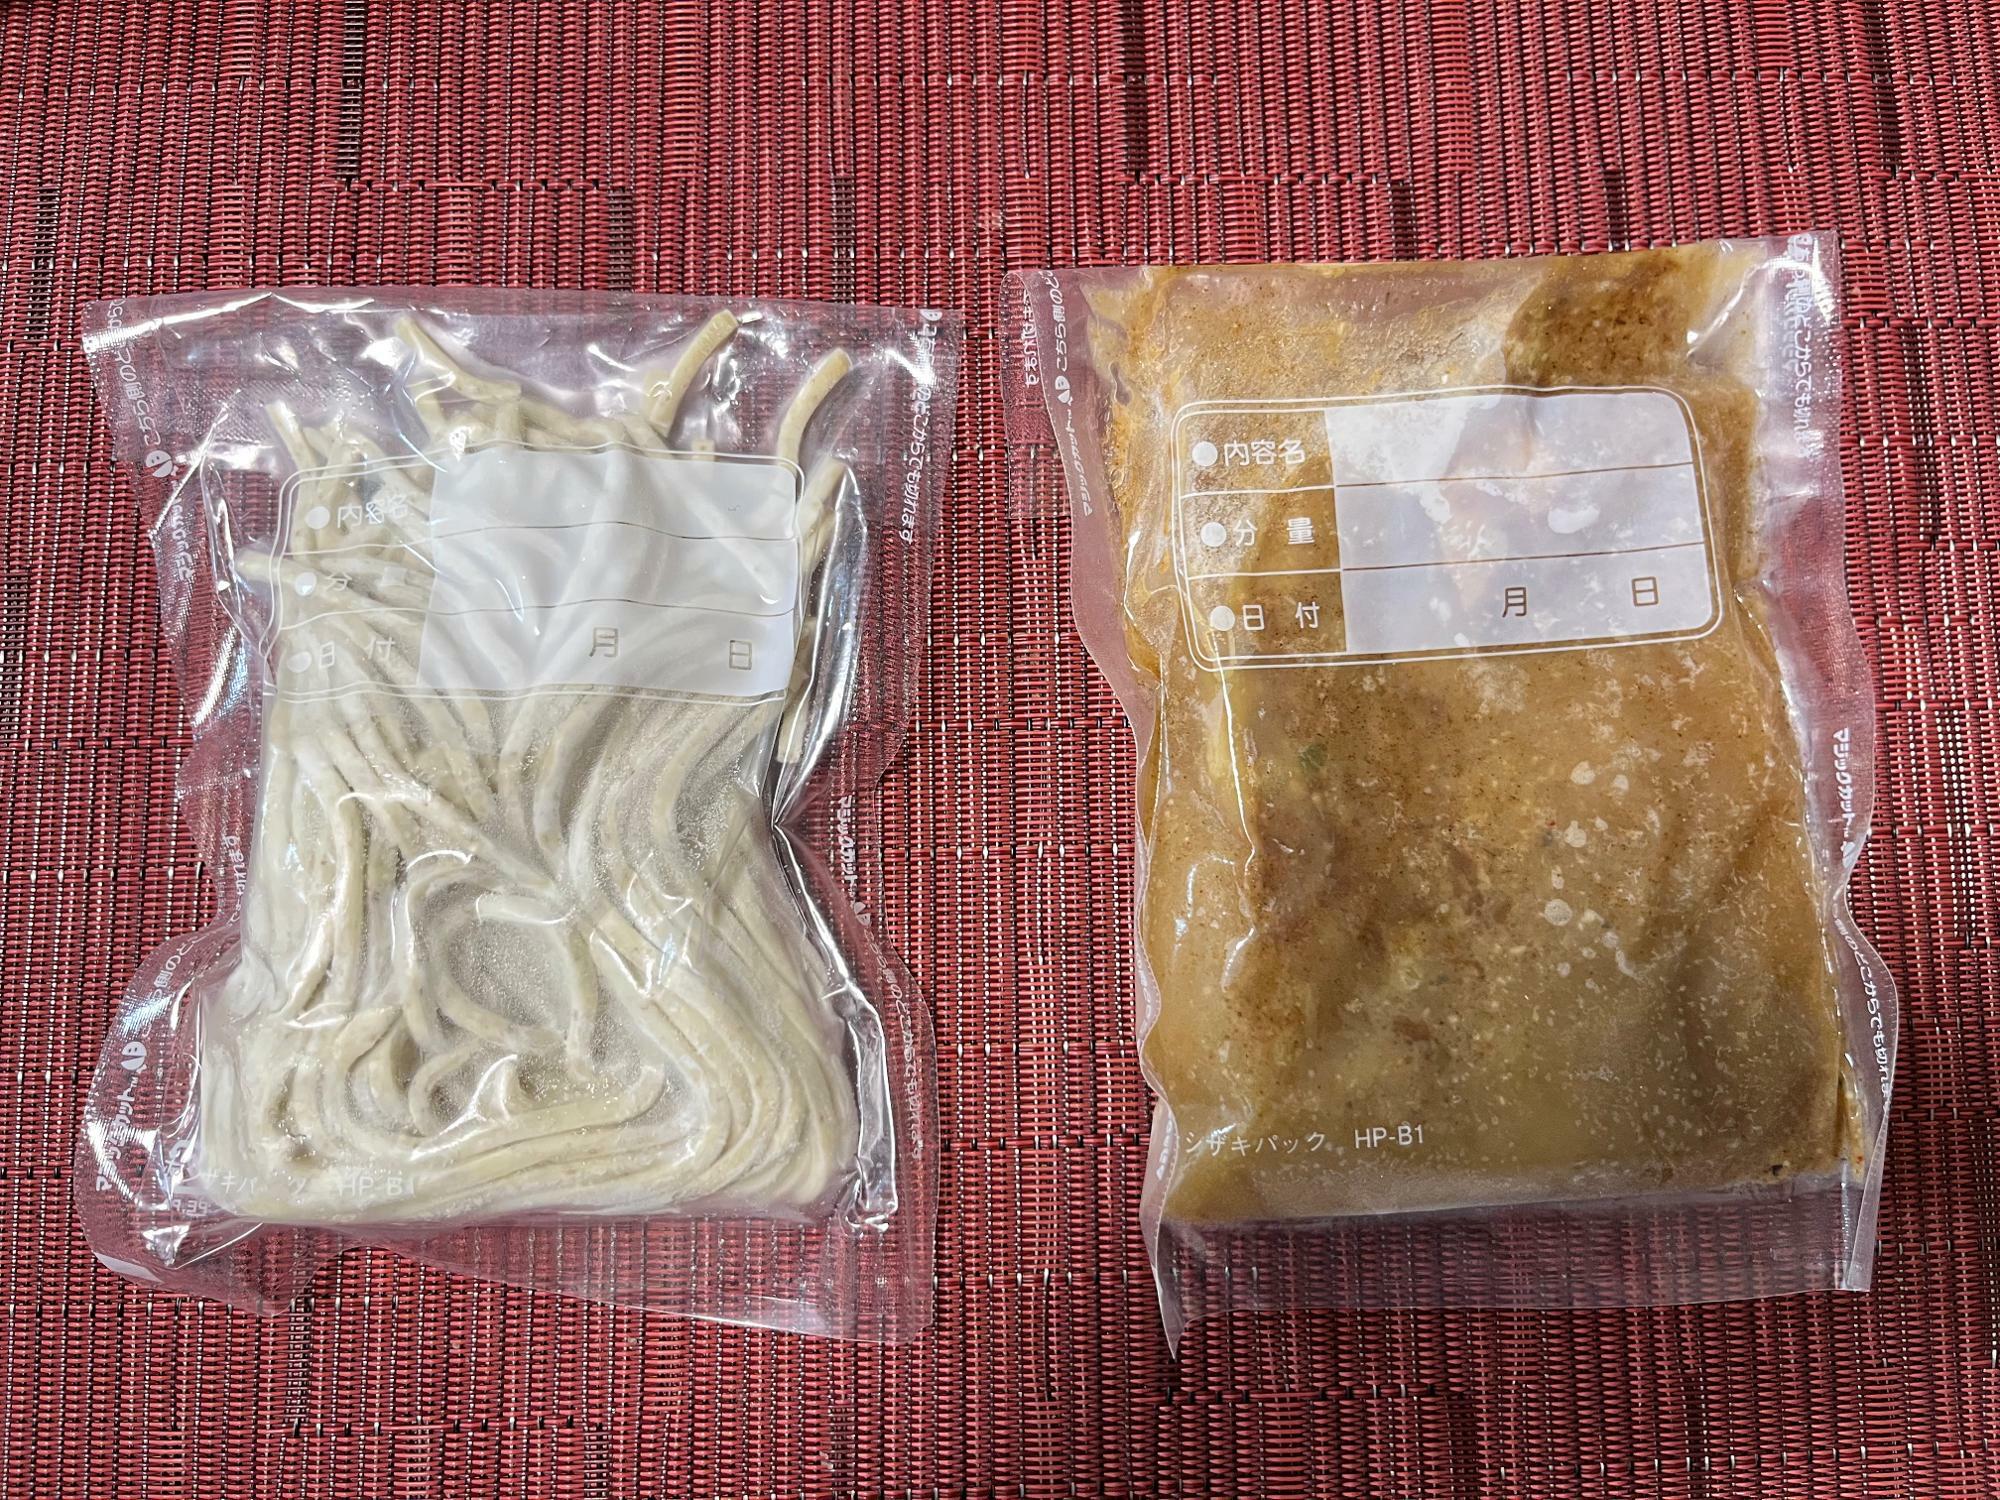 個包装された冷凍麺と冷凍スープ